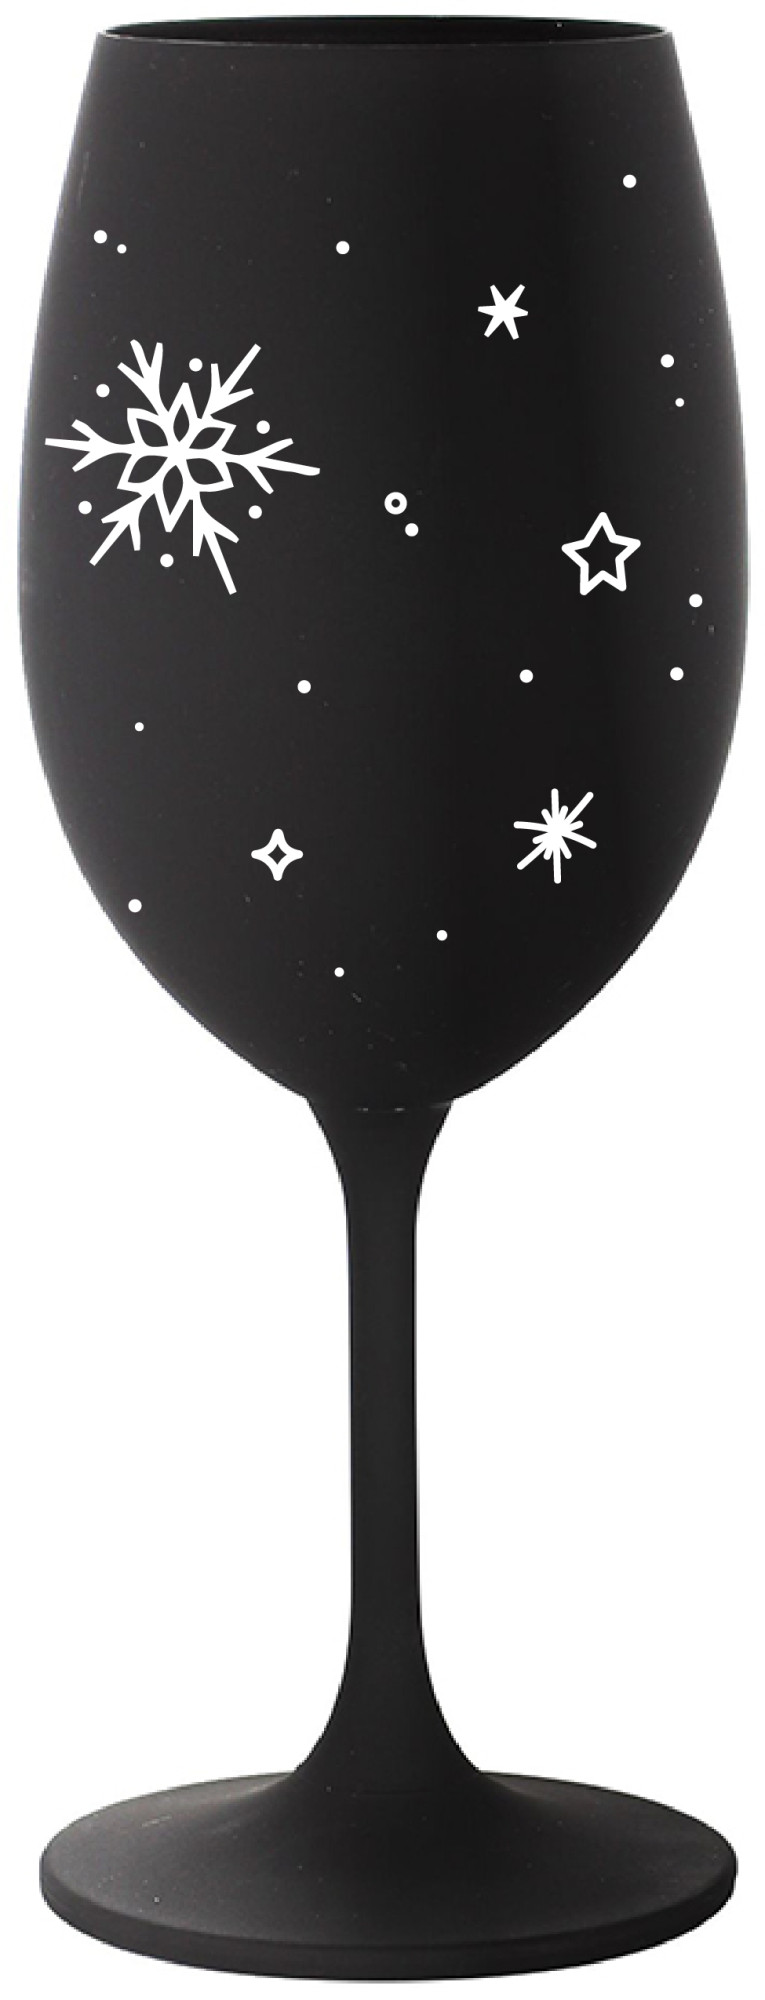 ZIMĚNKA - černá sklenice na víno 350 ml